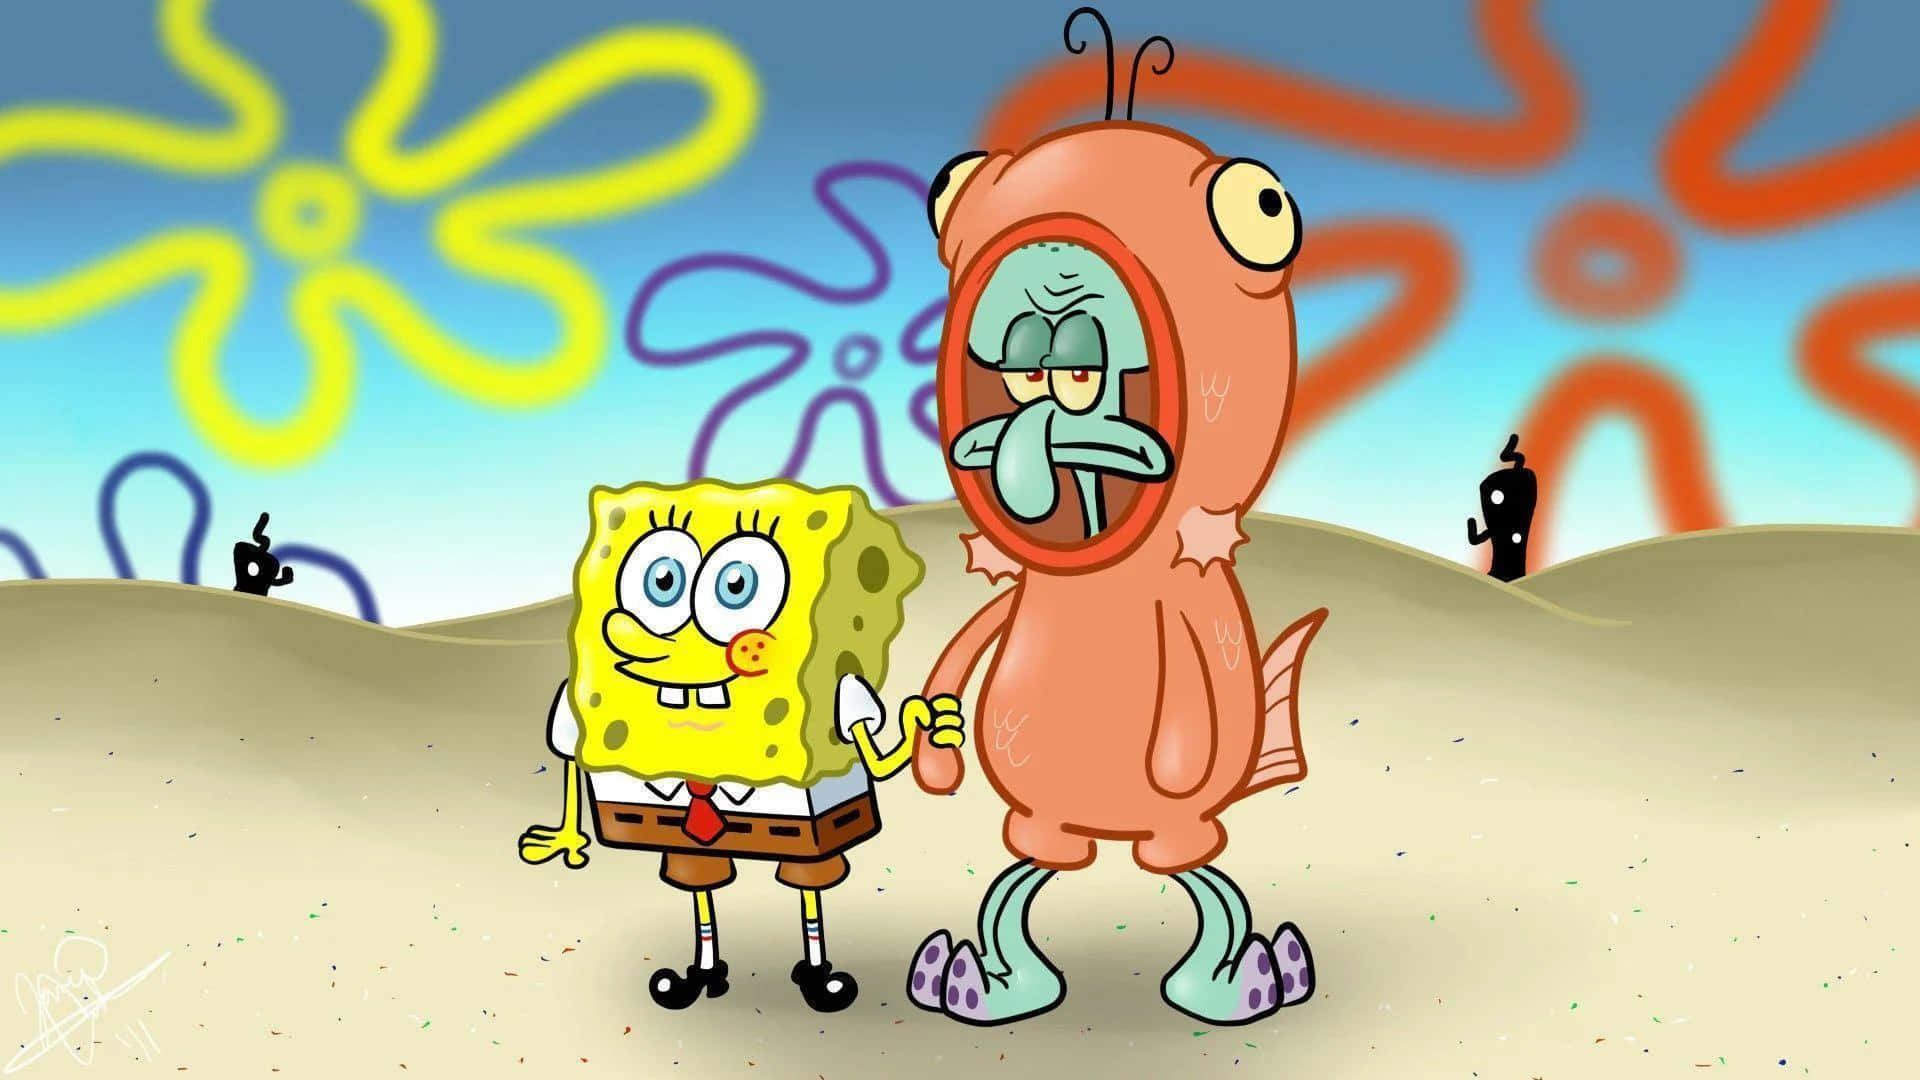 Seltsamesspongebob-squidward-kostümbild